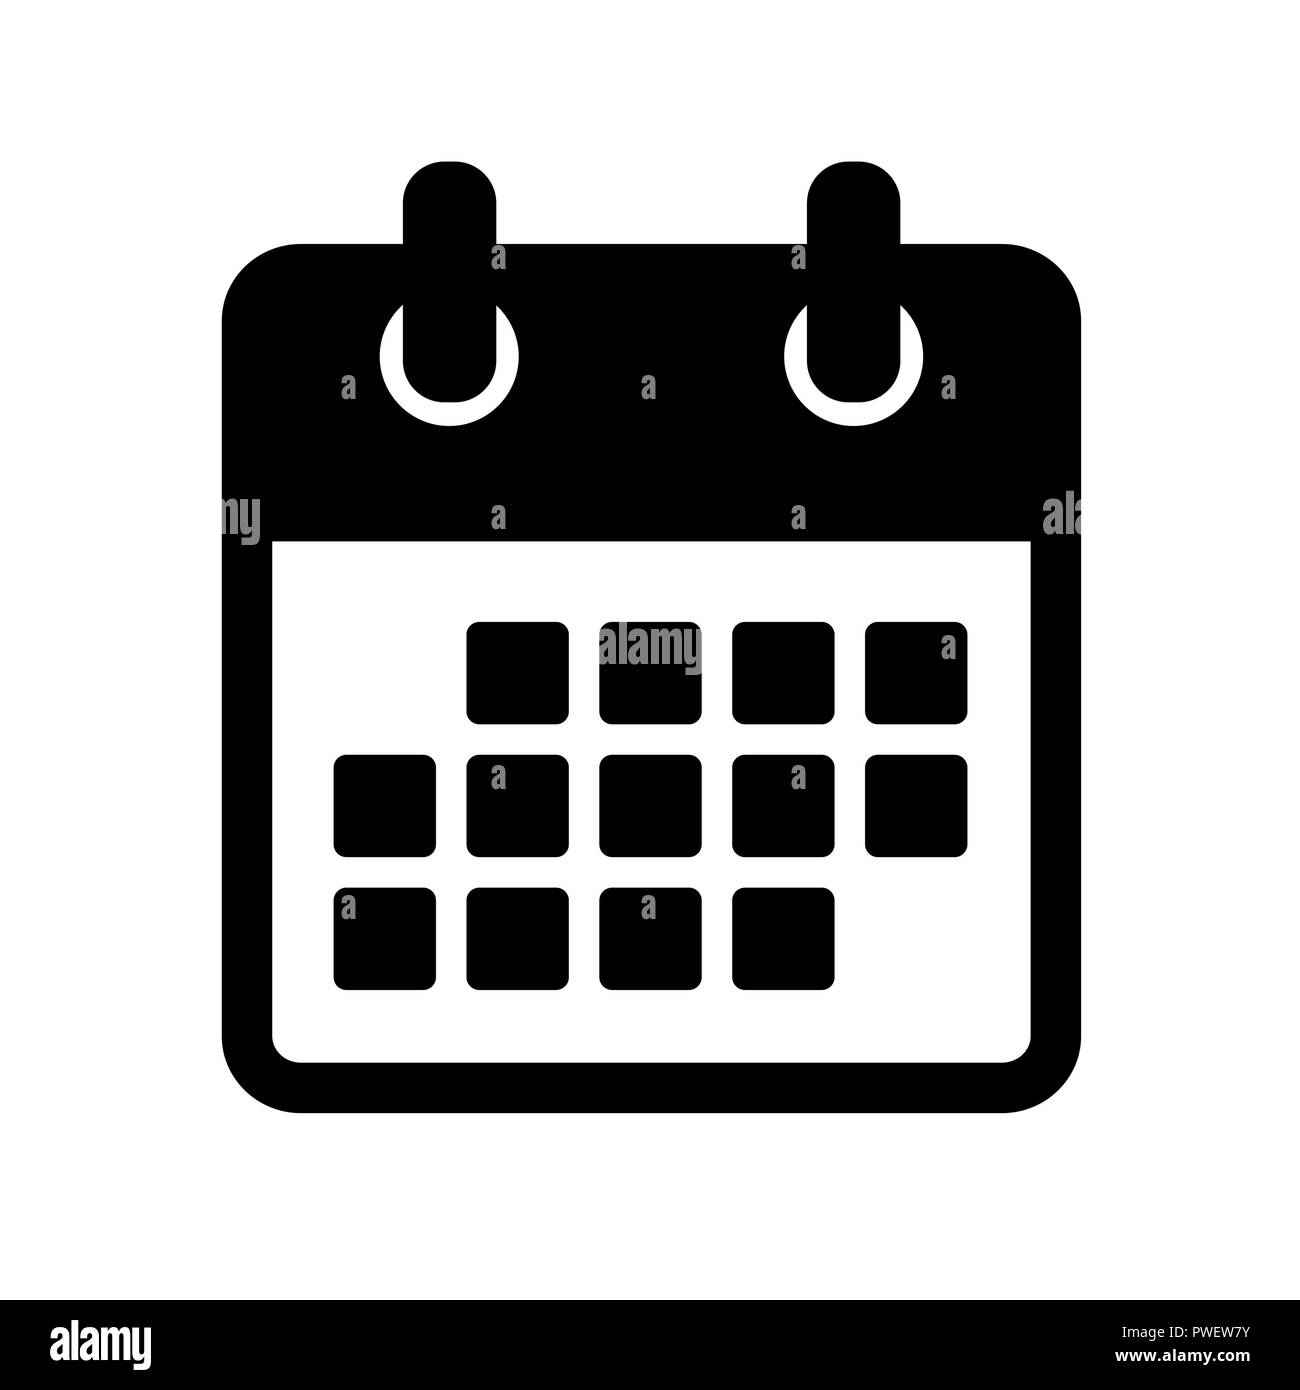 Schwarz einfacher Kalender Symbol Piktogramm auf weißem Hintergrund Vektor-illustration EPS 10. Stock Vektor